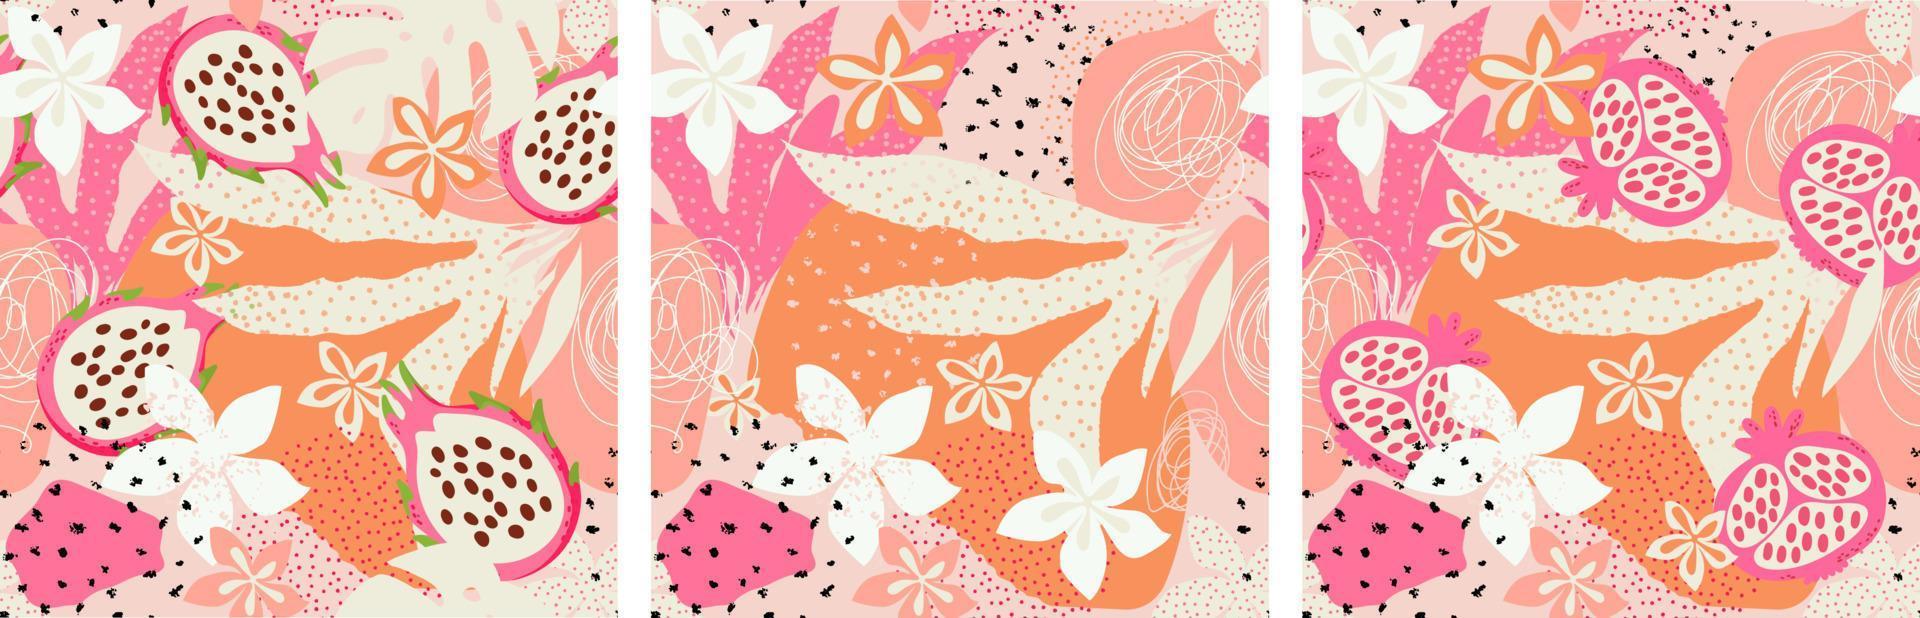 3 abstrato, exótico mão desenhado padrões. romã, pitaya, exótico folhas e flores desatado padronizar definir. vetor